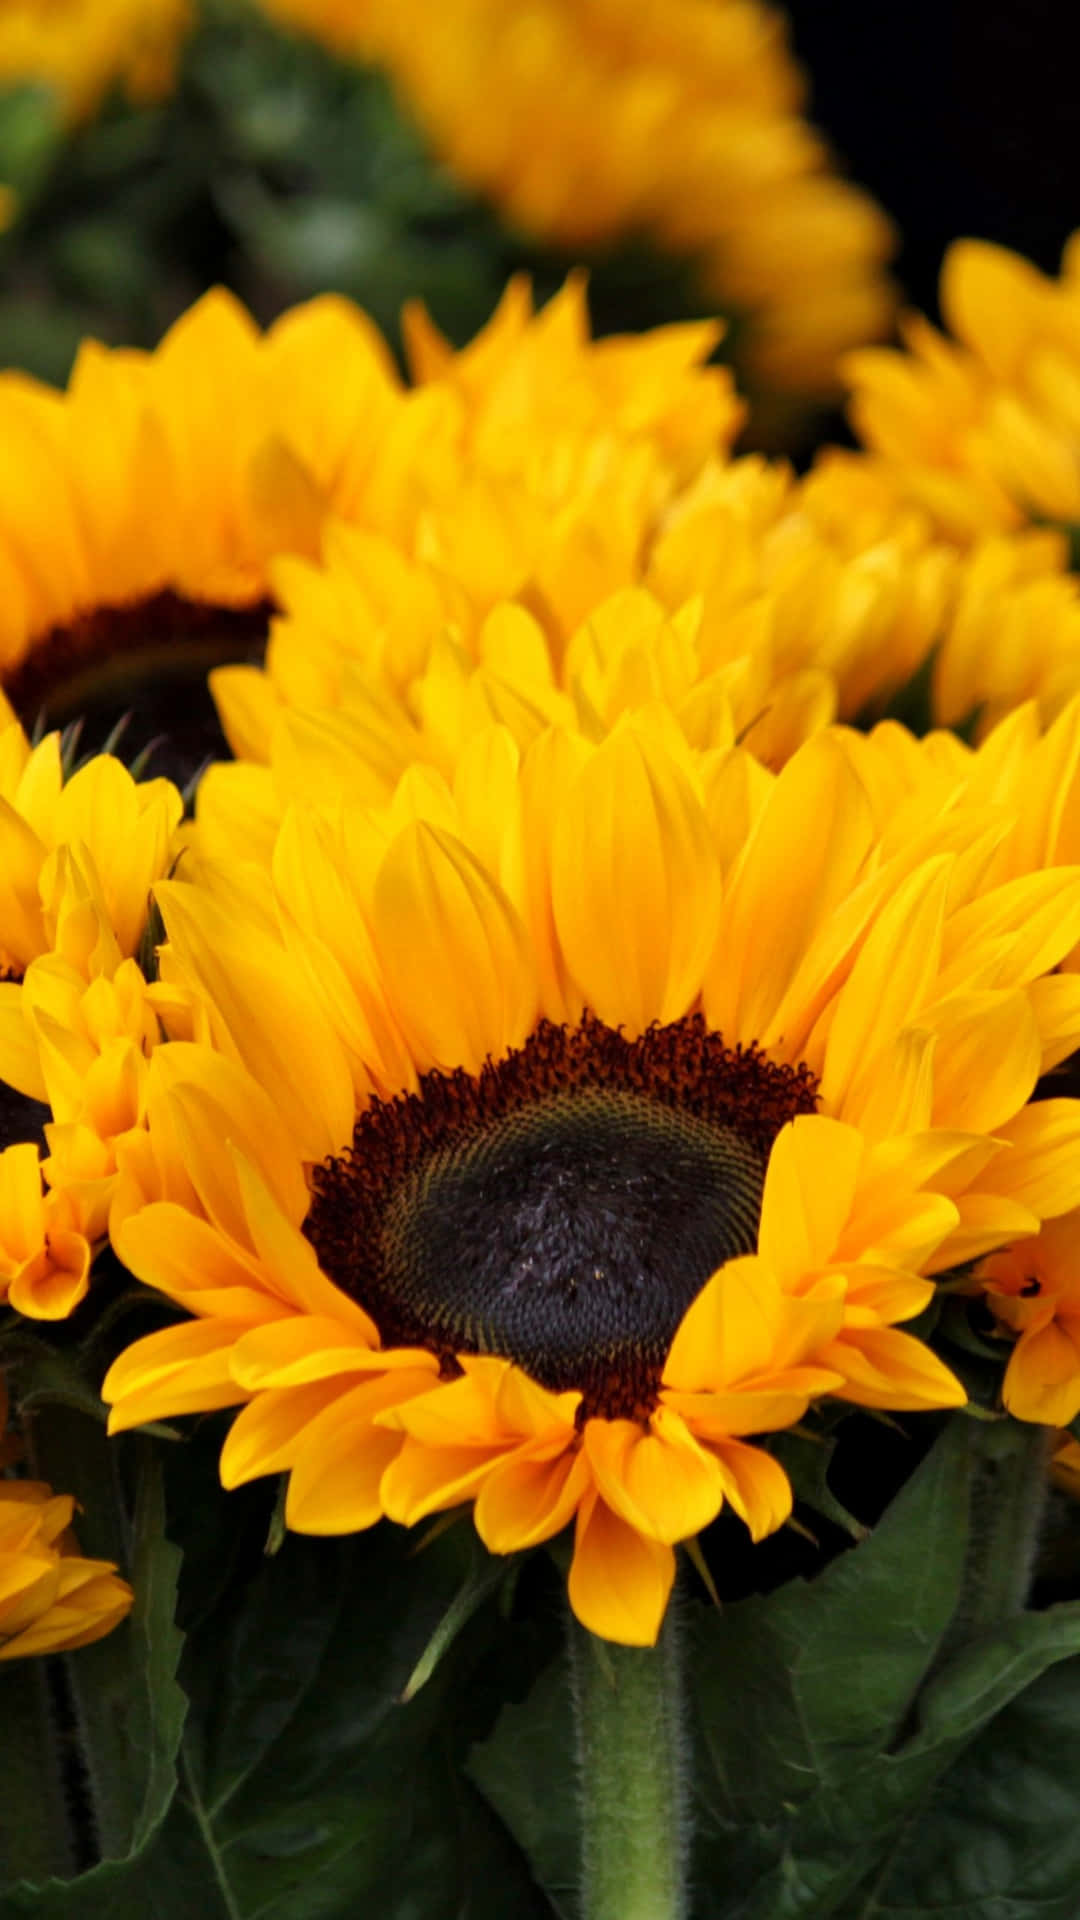 Erhellensie Ihren Tag Mit Einem Sonnenblumen-handy! Wallpaper